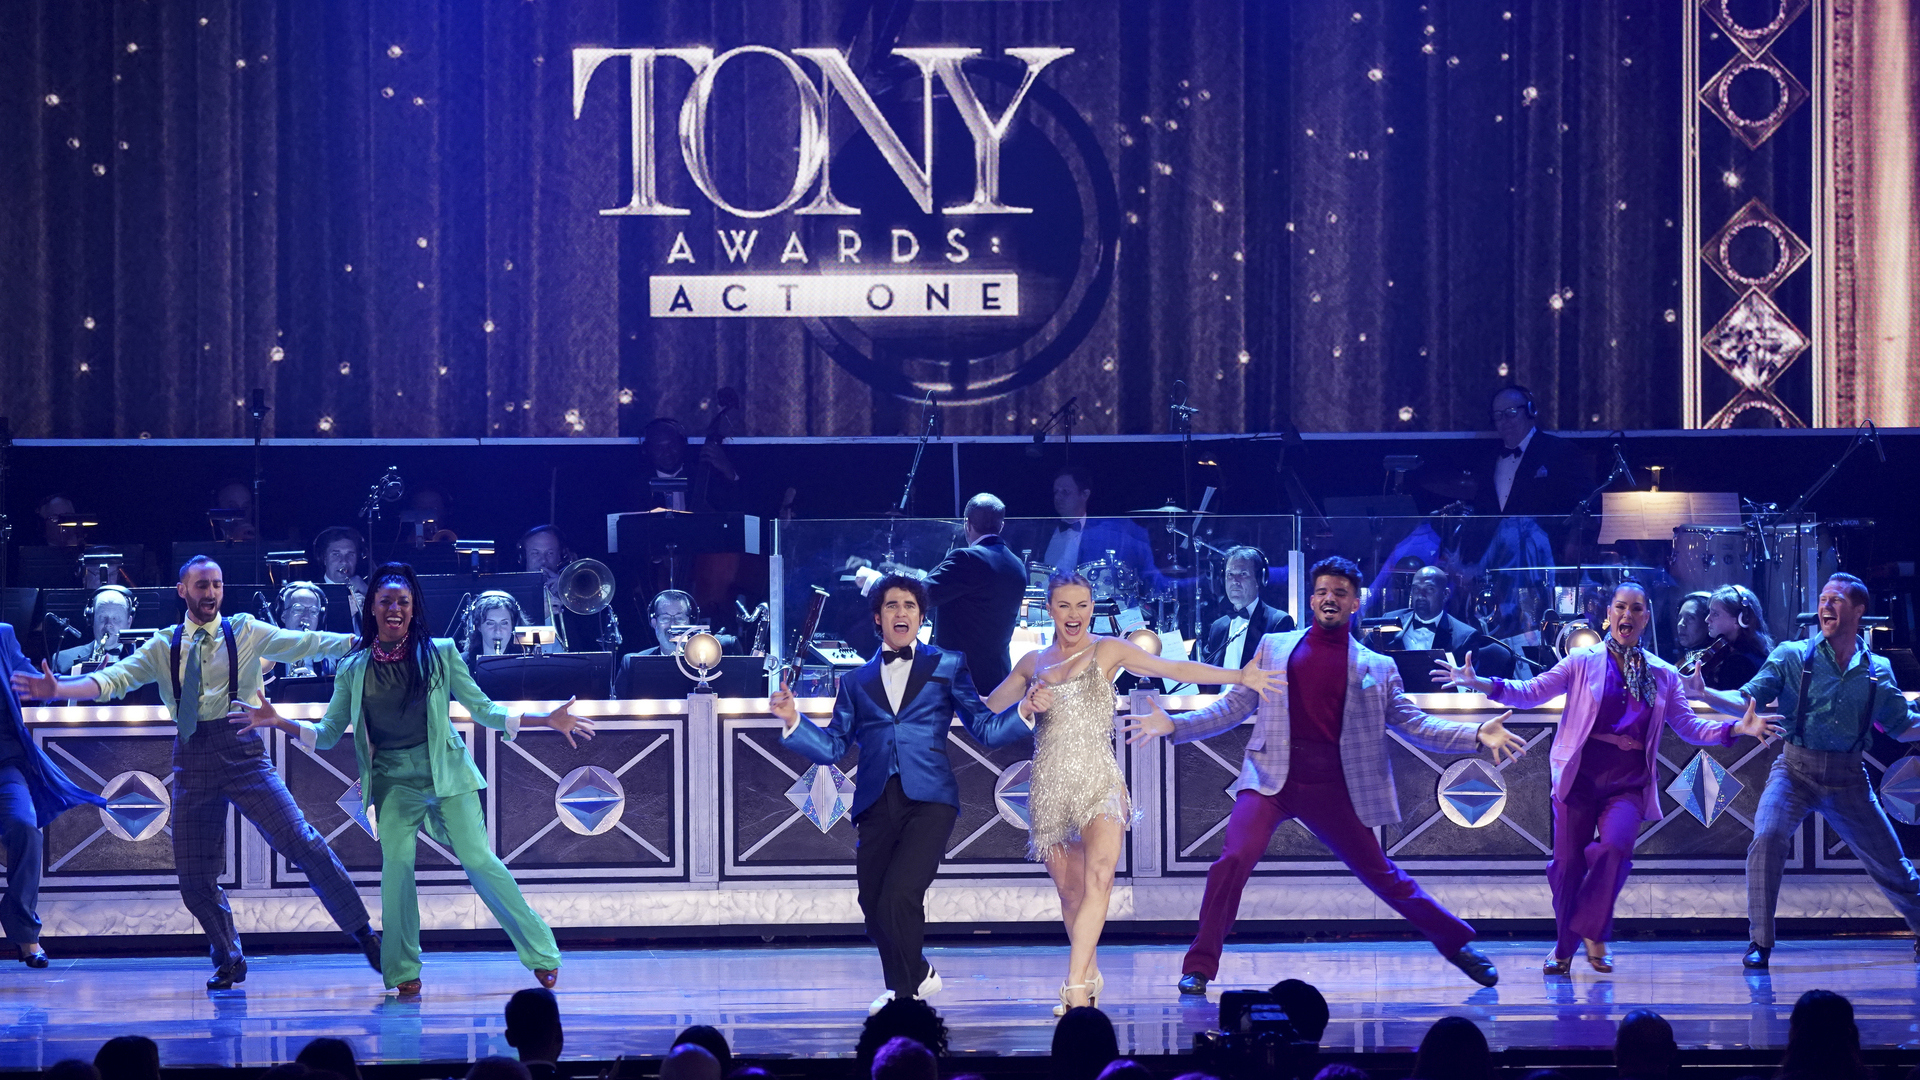 Watch Tony Awards Season 2022 Episode 1 The Tony Awards Act One